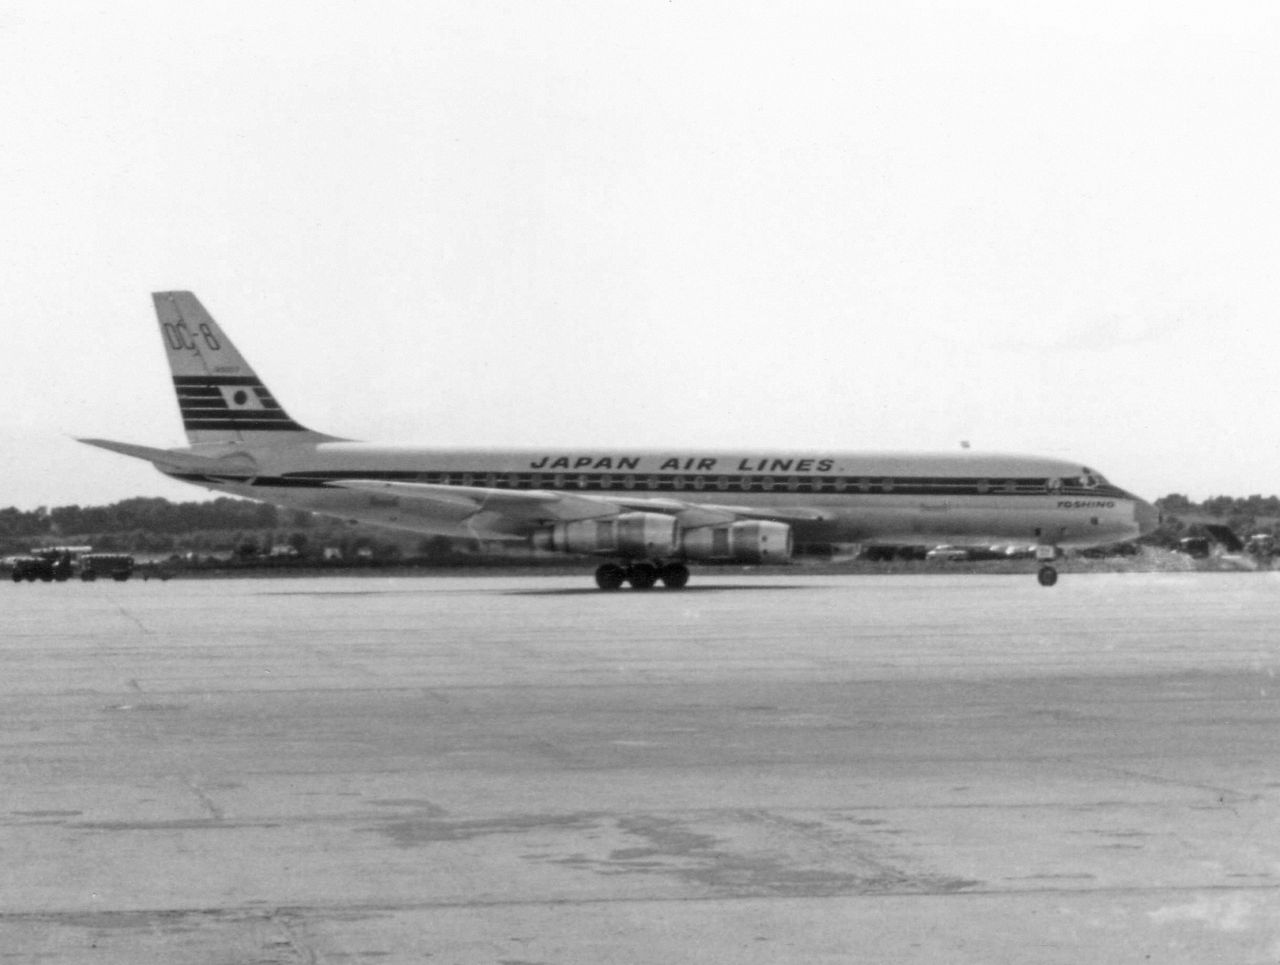 Meglepően sok DC-8-as zuhant le vagy tört össze a JAL színeiben...